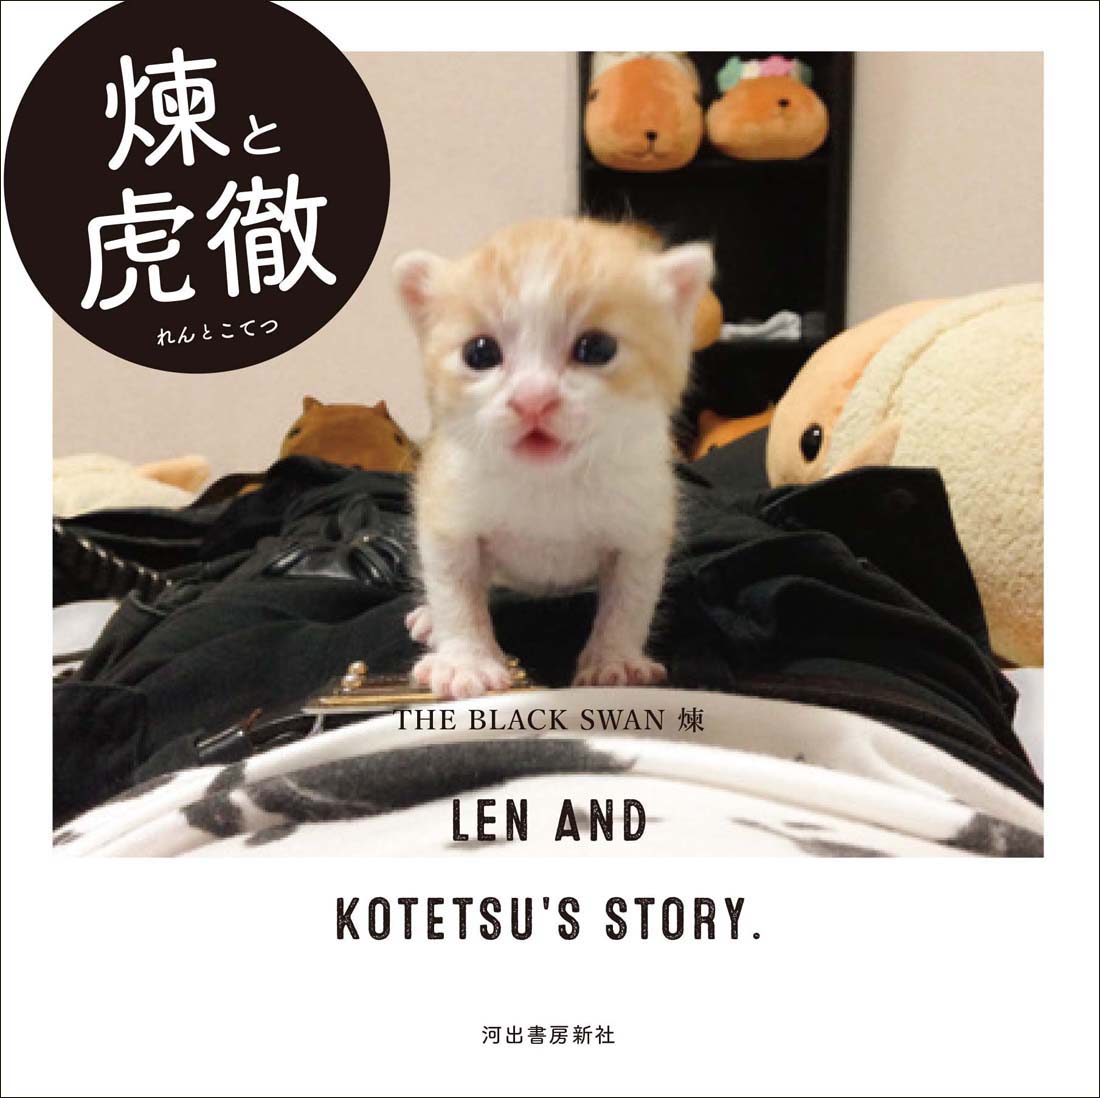 日本中で見守られている 生まれたての赤ちゃん猫とヴィジュアル系バンドマン 奇跡のコンビの物語が写真集に 河出書房新社のプレスリリース